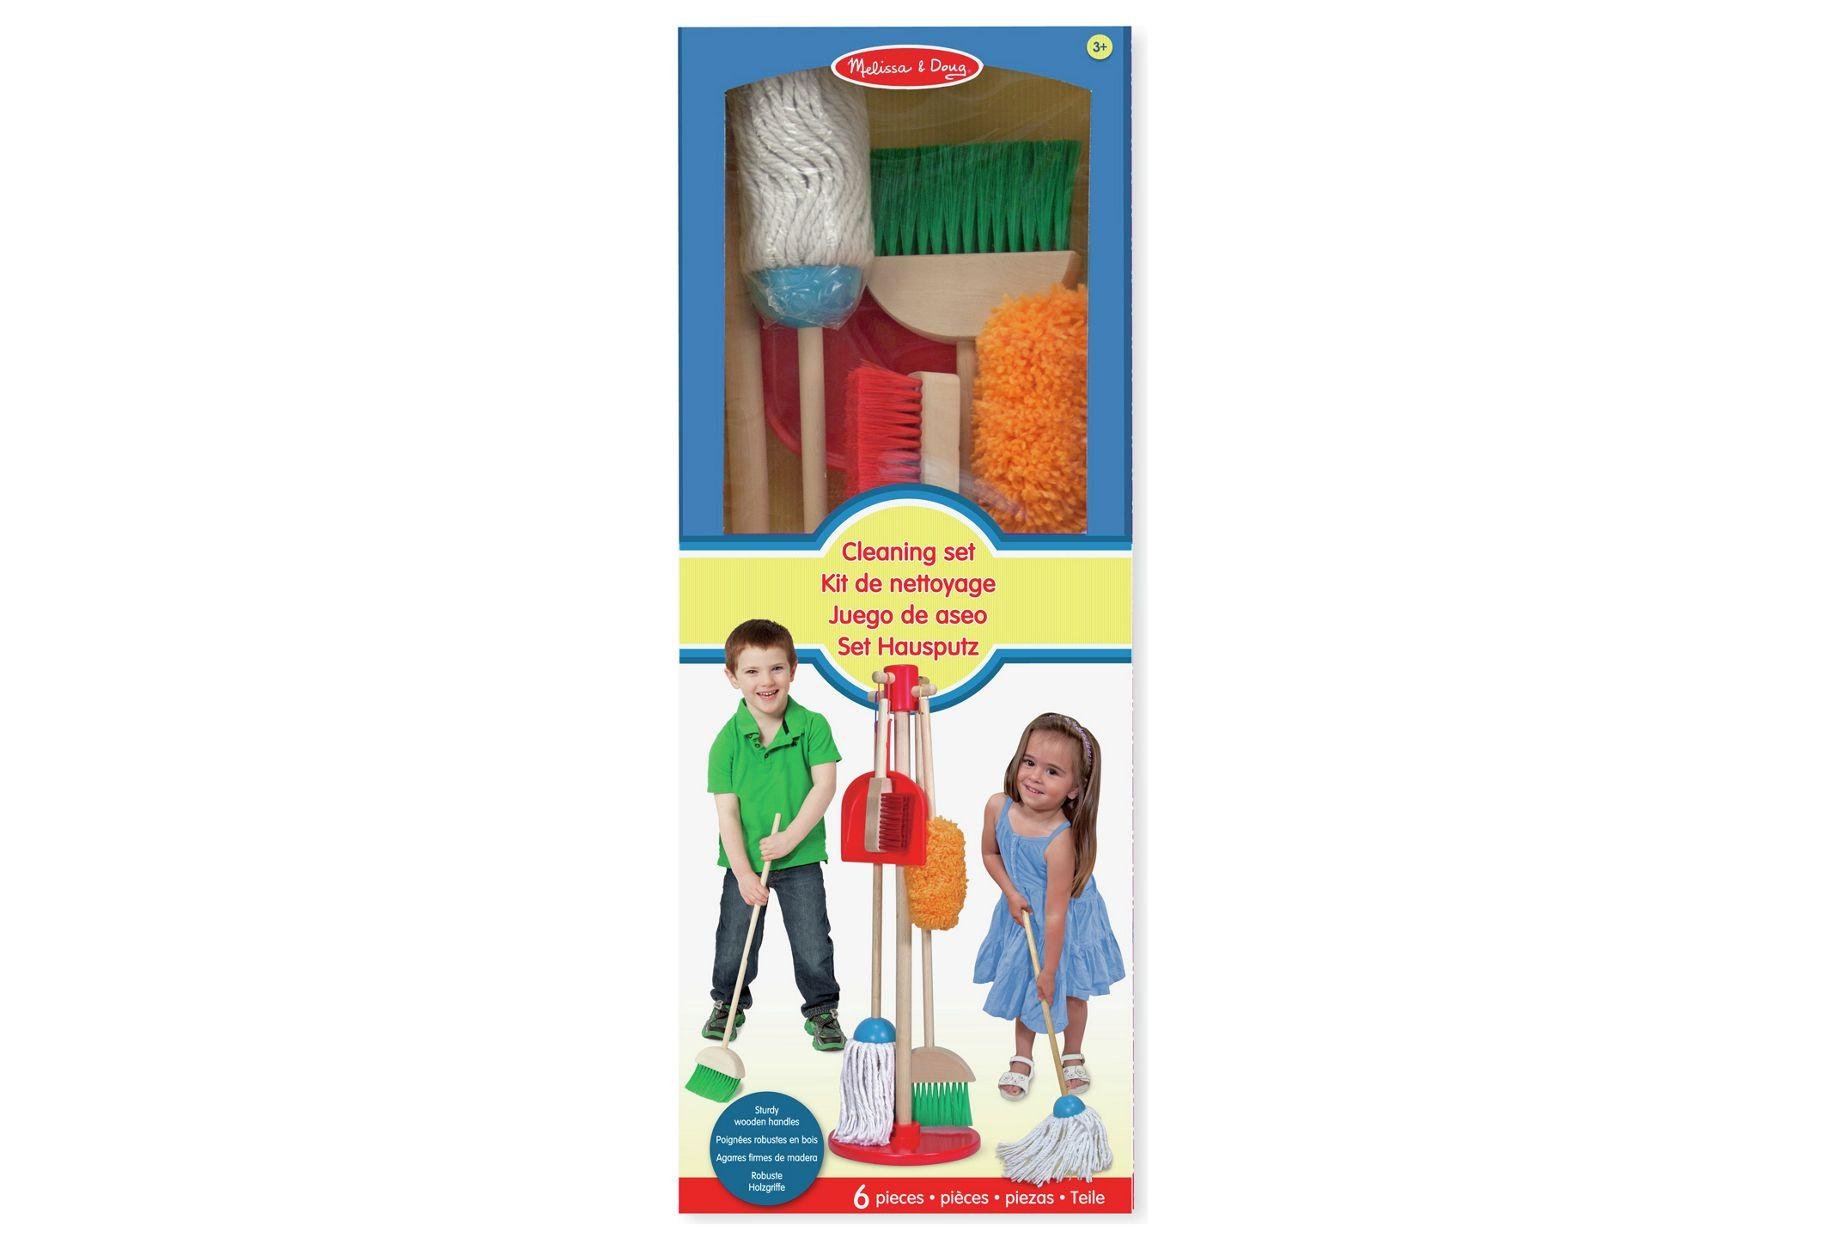 melissa and doug dust sweep mop set